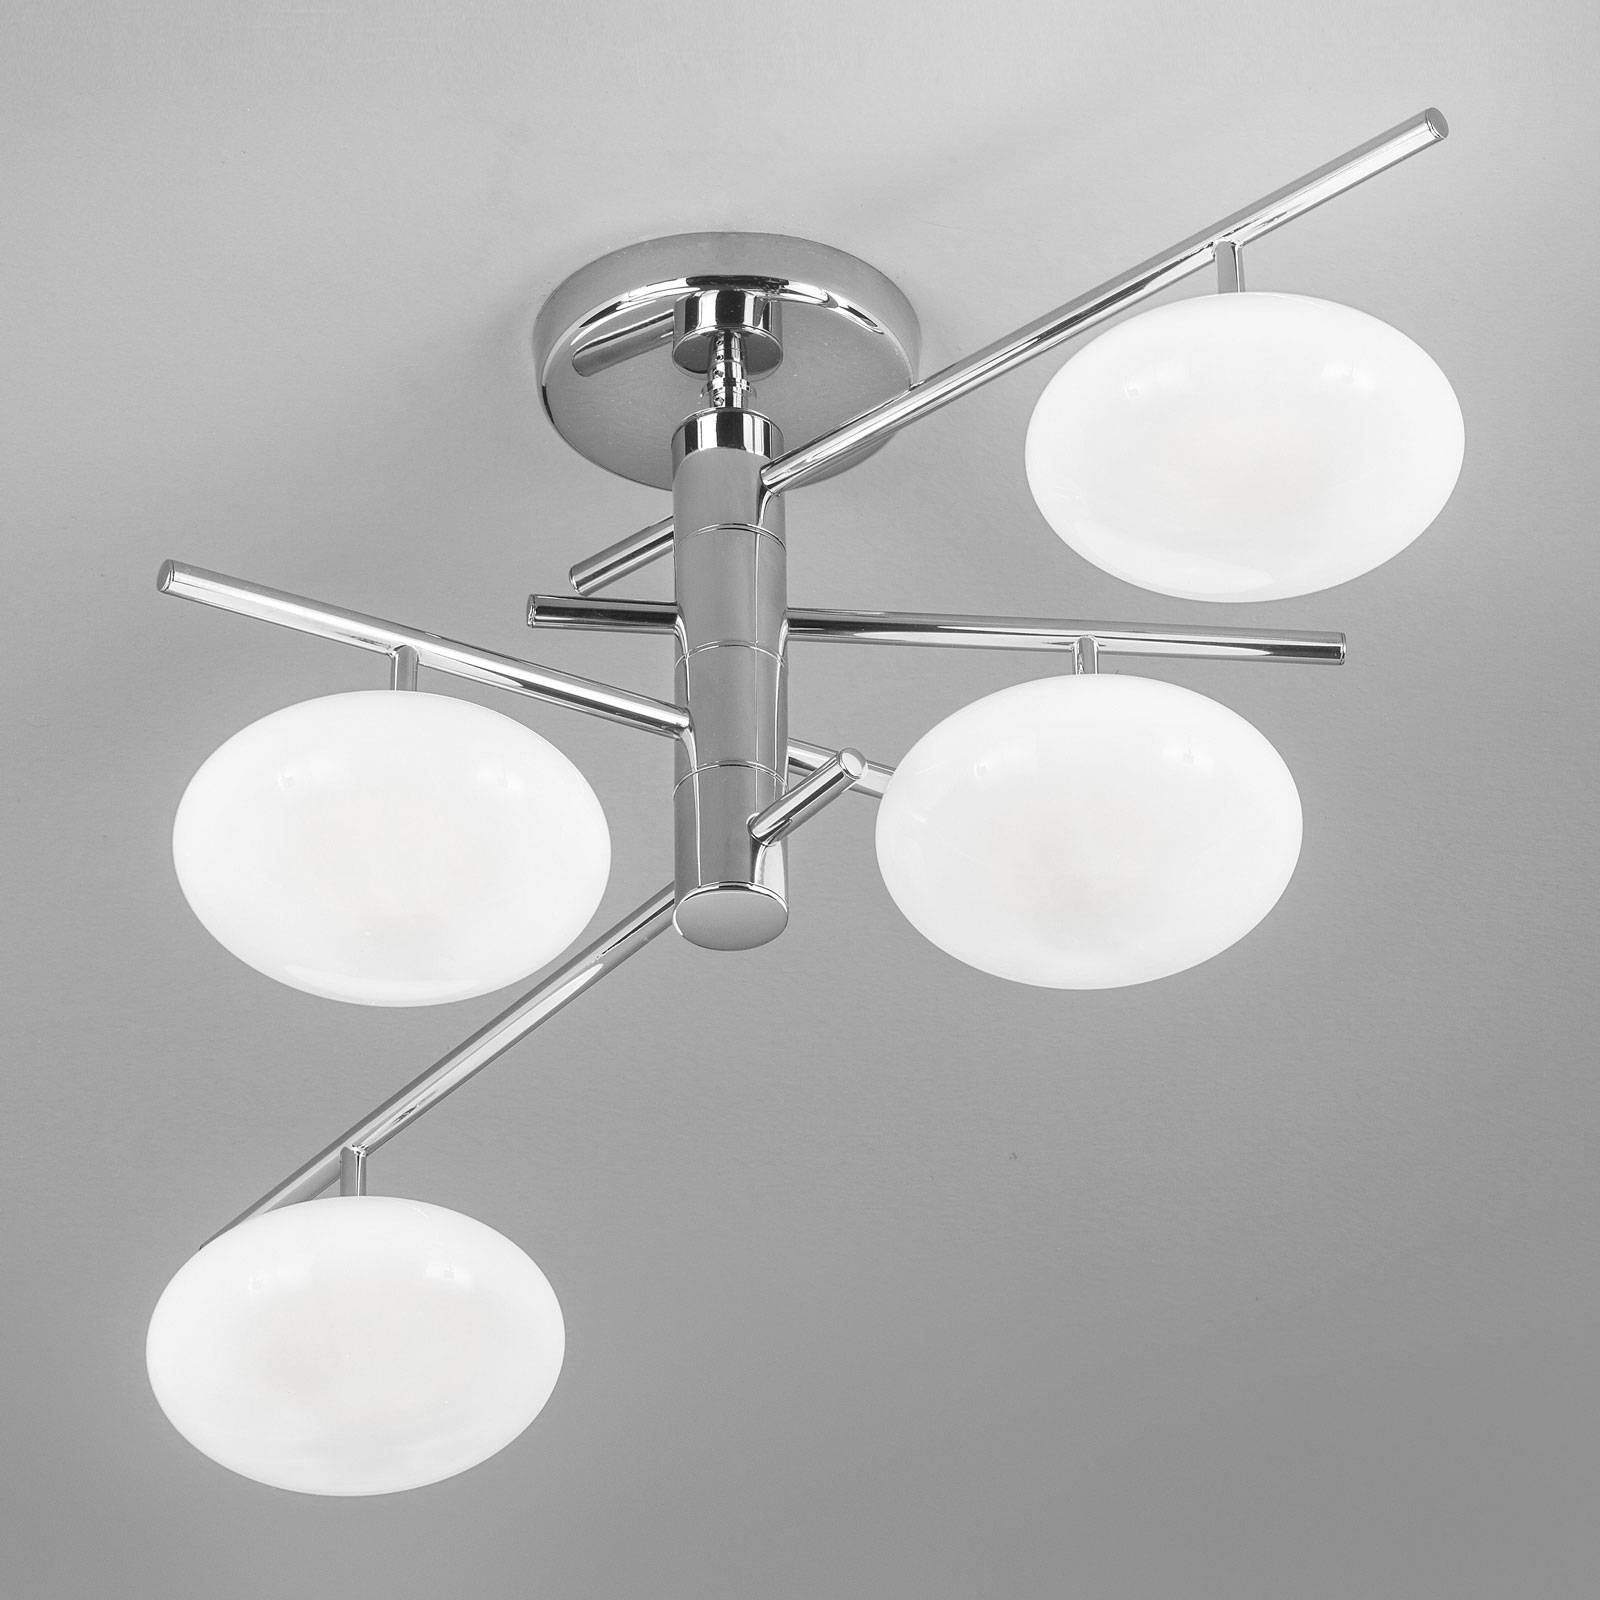 Image of Metallux Plafonnier Dolce 4 lampes, chromé/abat-jour blancs 8058983363560